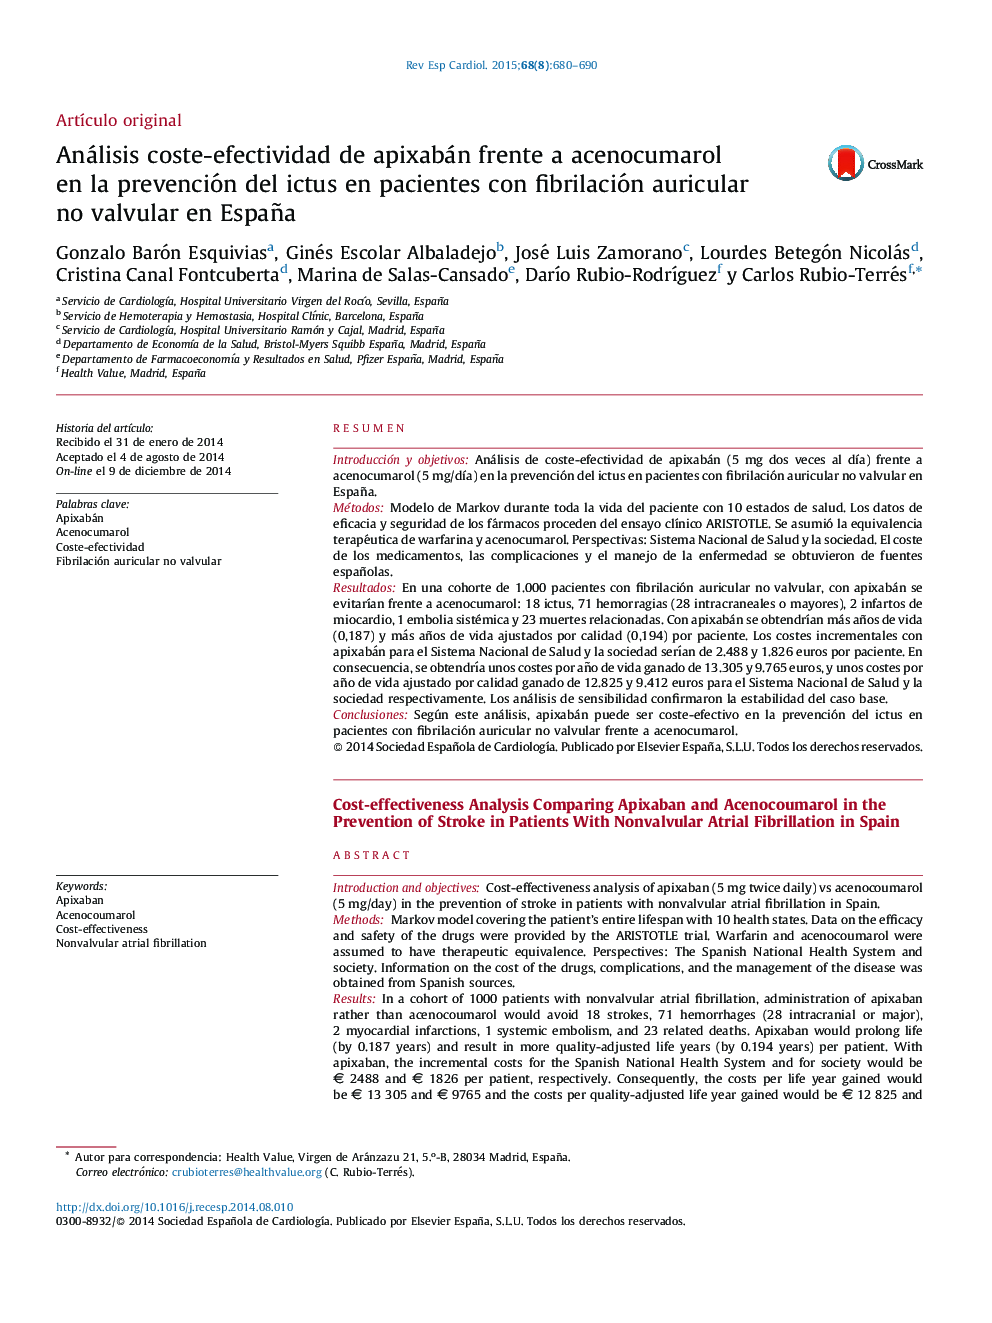 Análisis coste-efectividad de apixabán frente a acenocumarol en la prevención del ictus en pacientes con fibrilación auricular no valvular en España